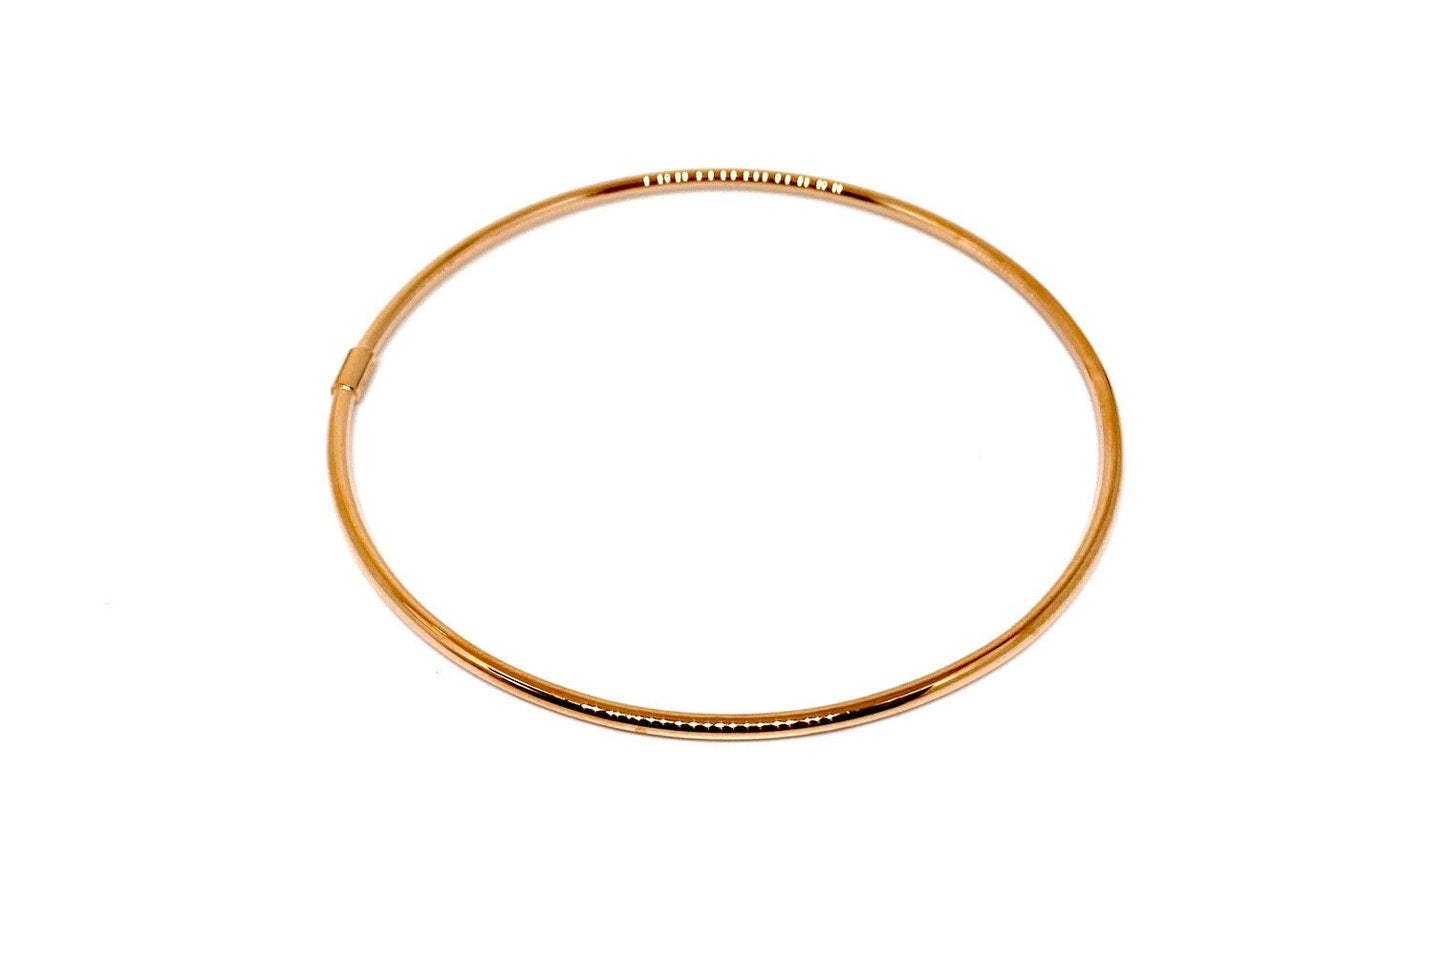 Multi-Color Gold Stackable Bangle Bracelets